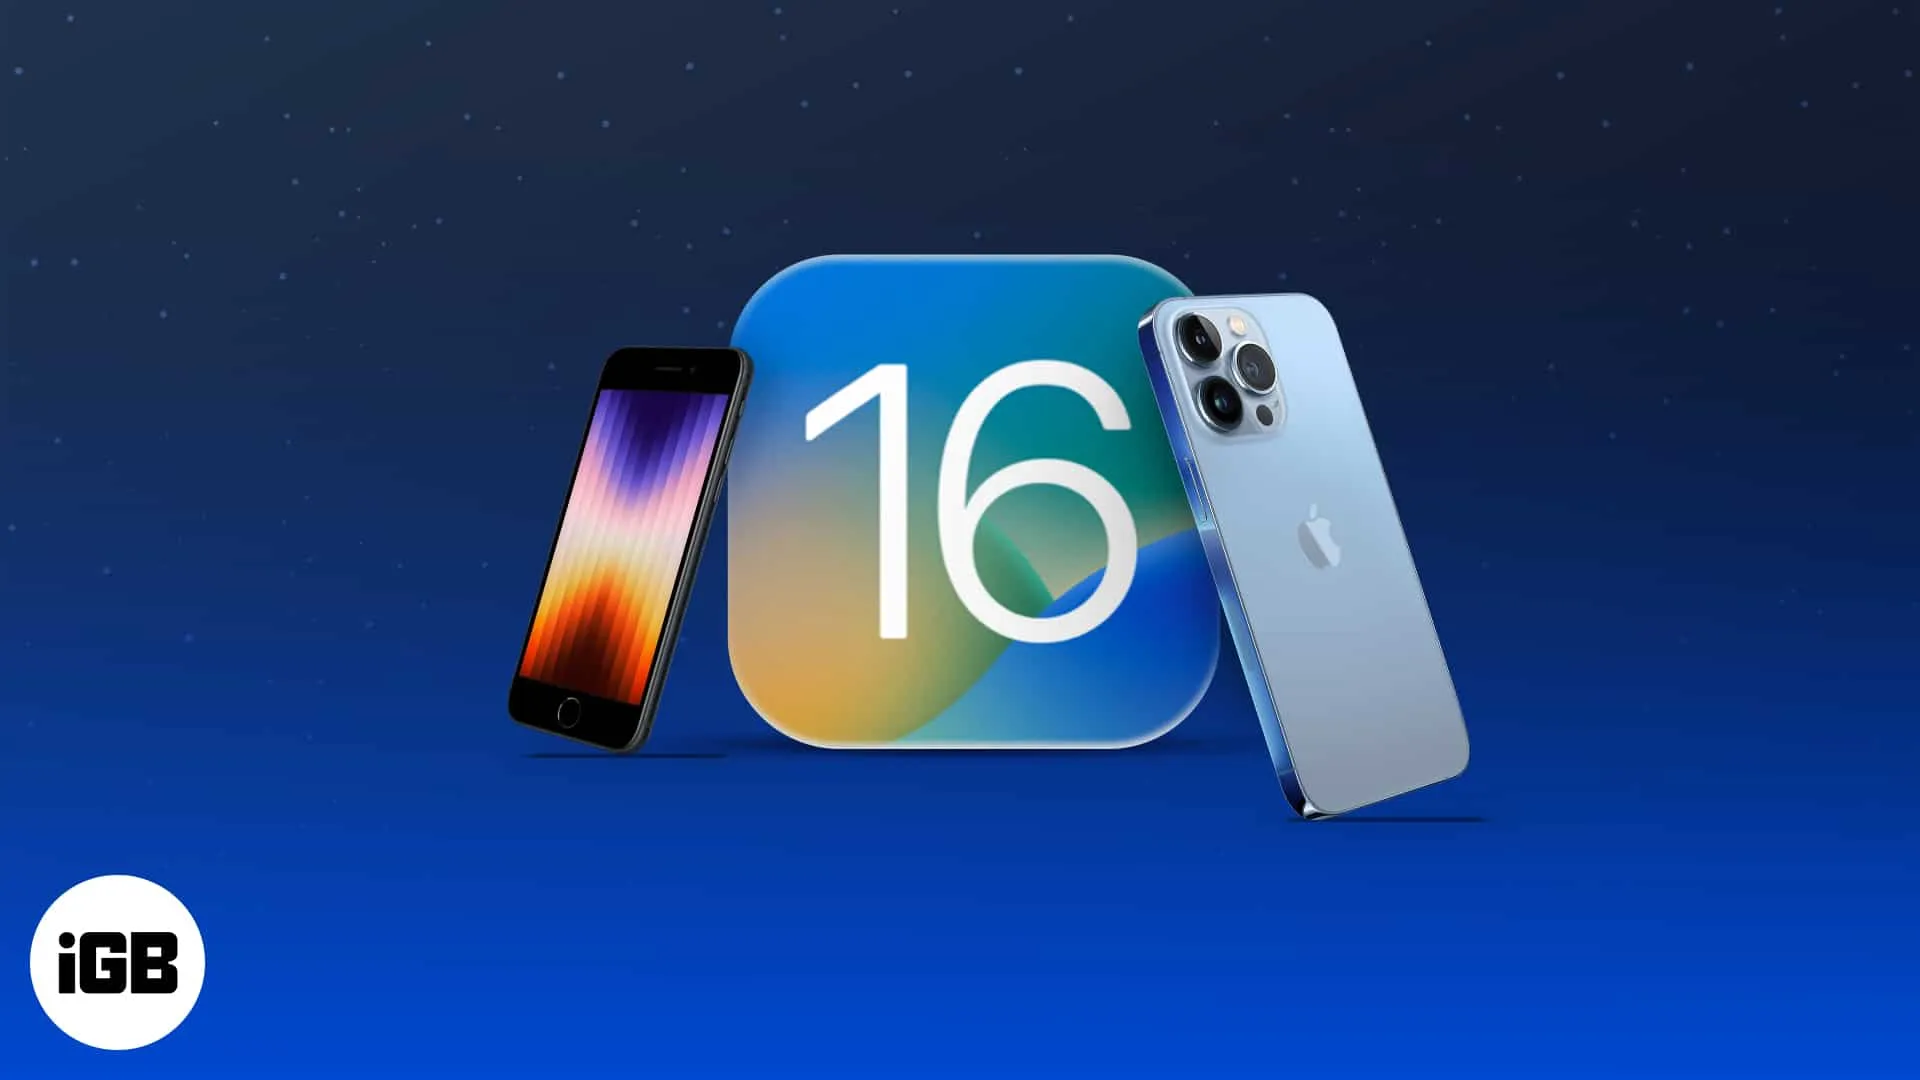 Руководство по iOS 16: функции, поддерживаемые устройства, ограничения и многое другое